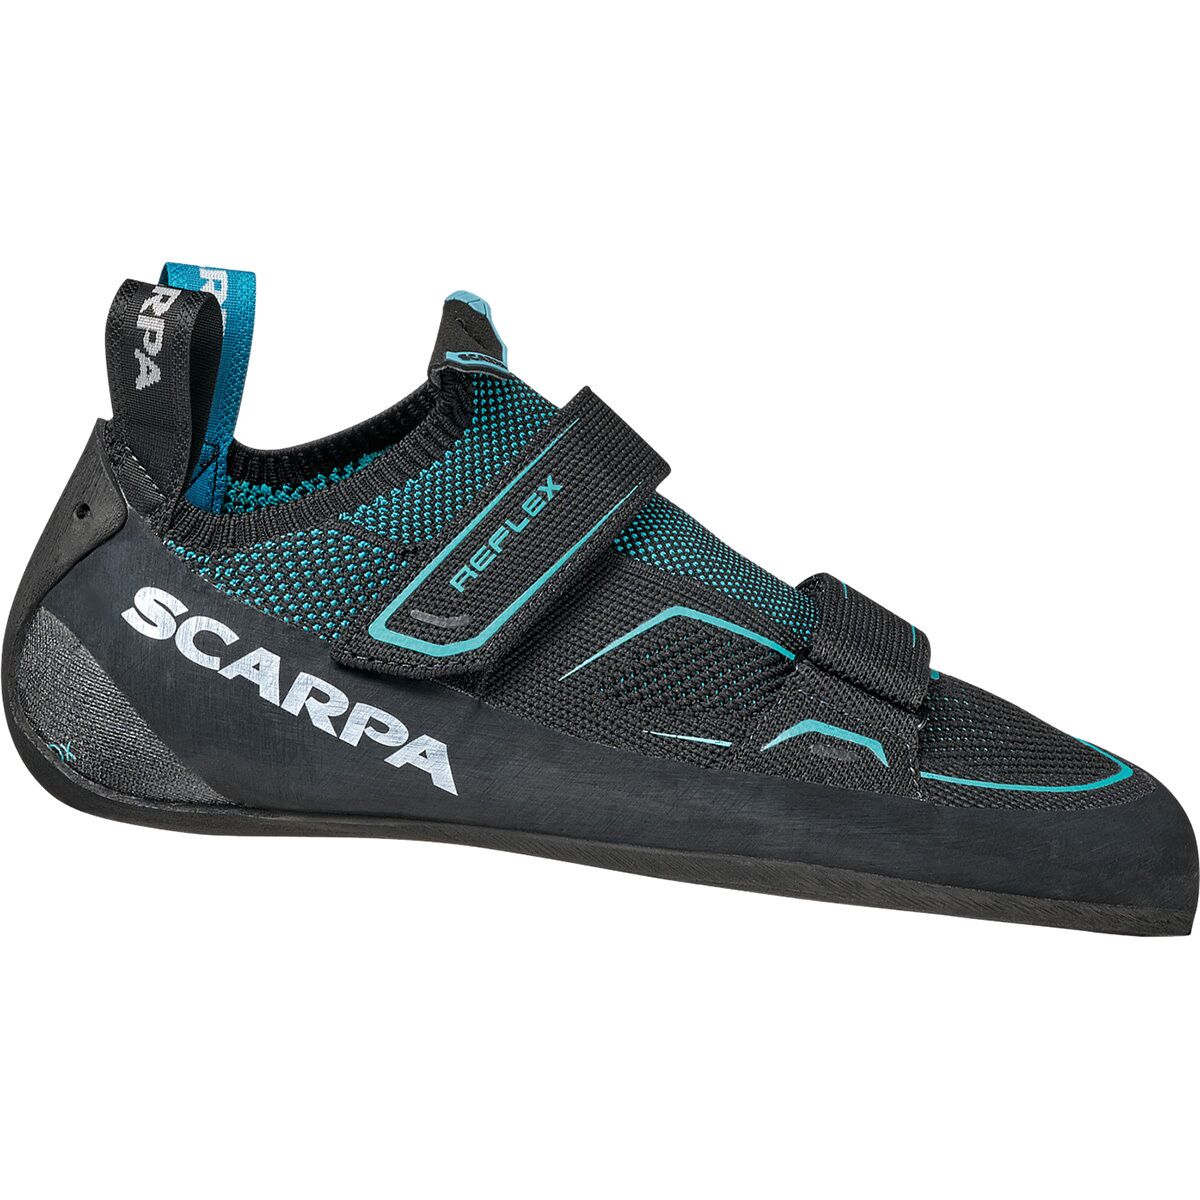 Scarpa Reflex V Climbing Shoe - Women's